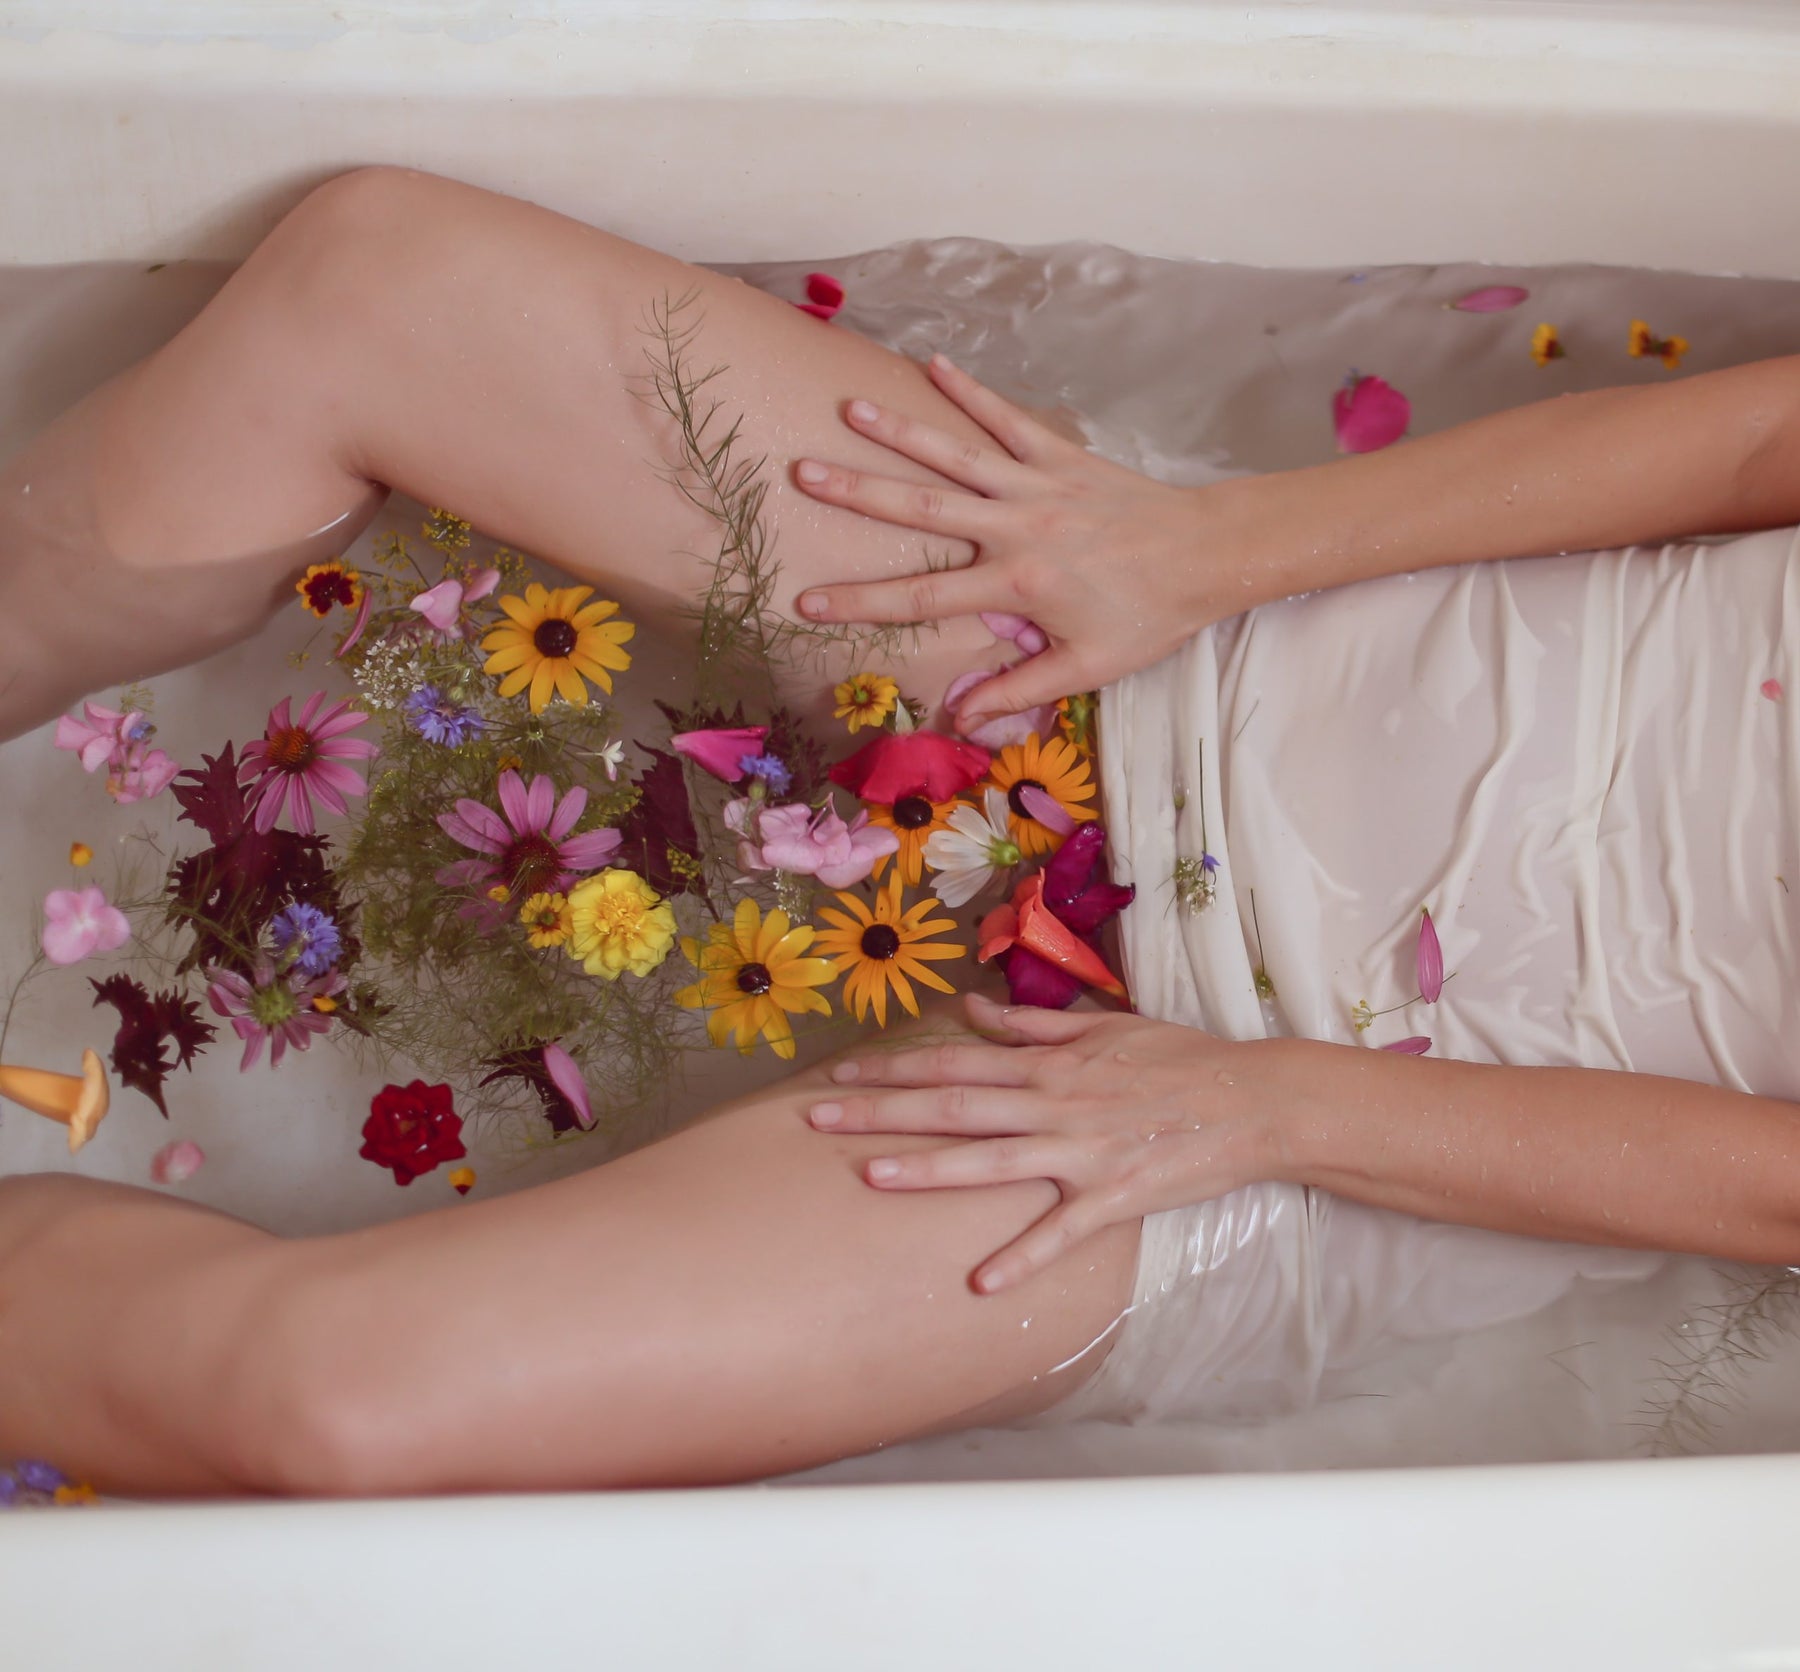 girl in tub